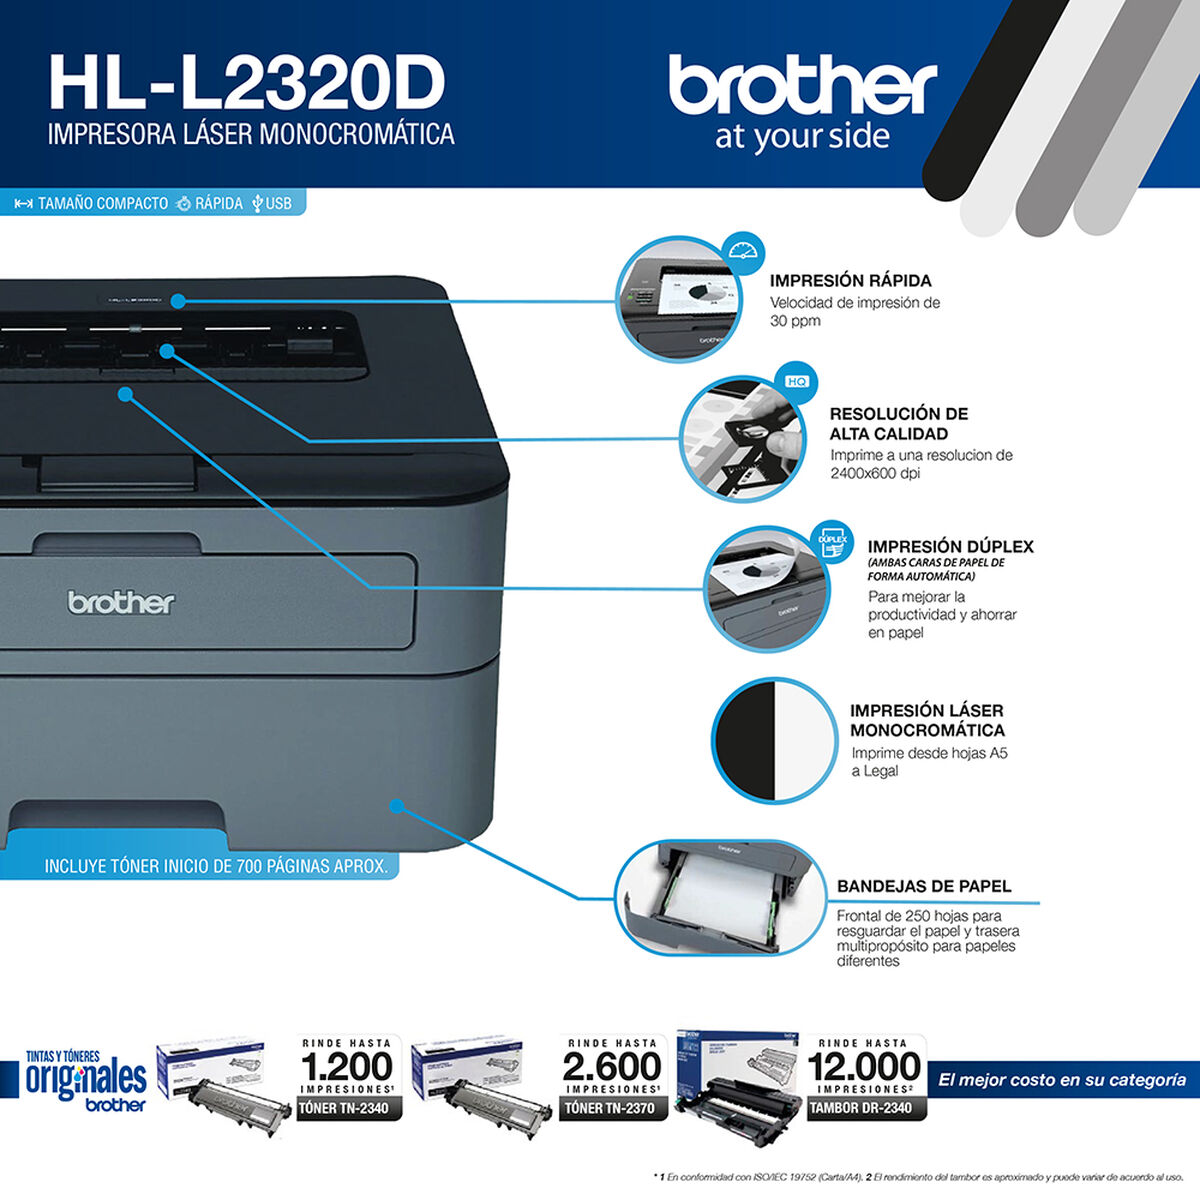 Impresora Láser Monocromática Brother HL-L2320D